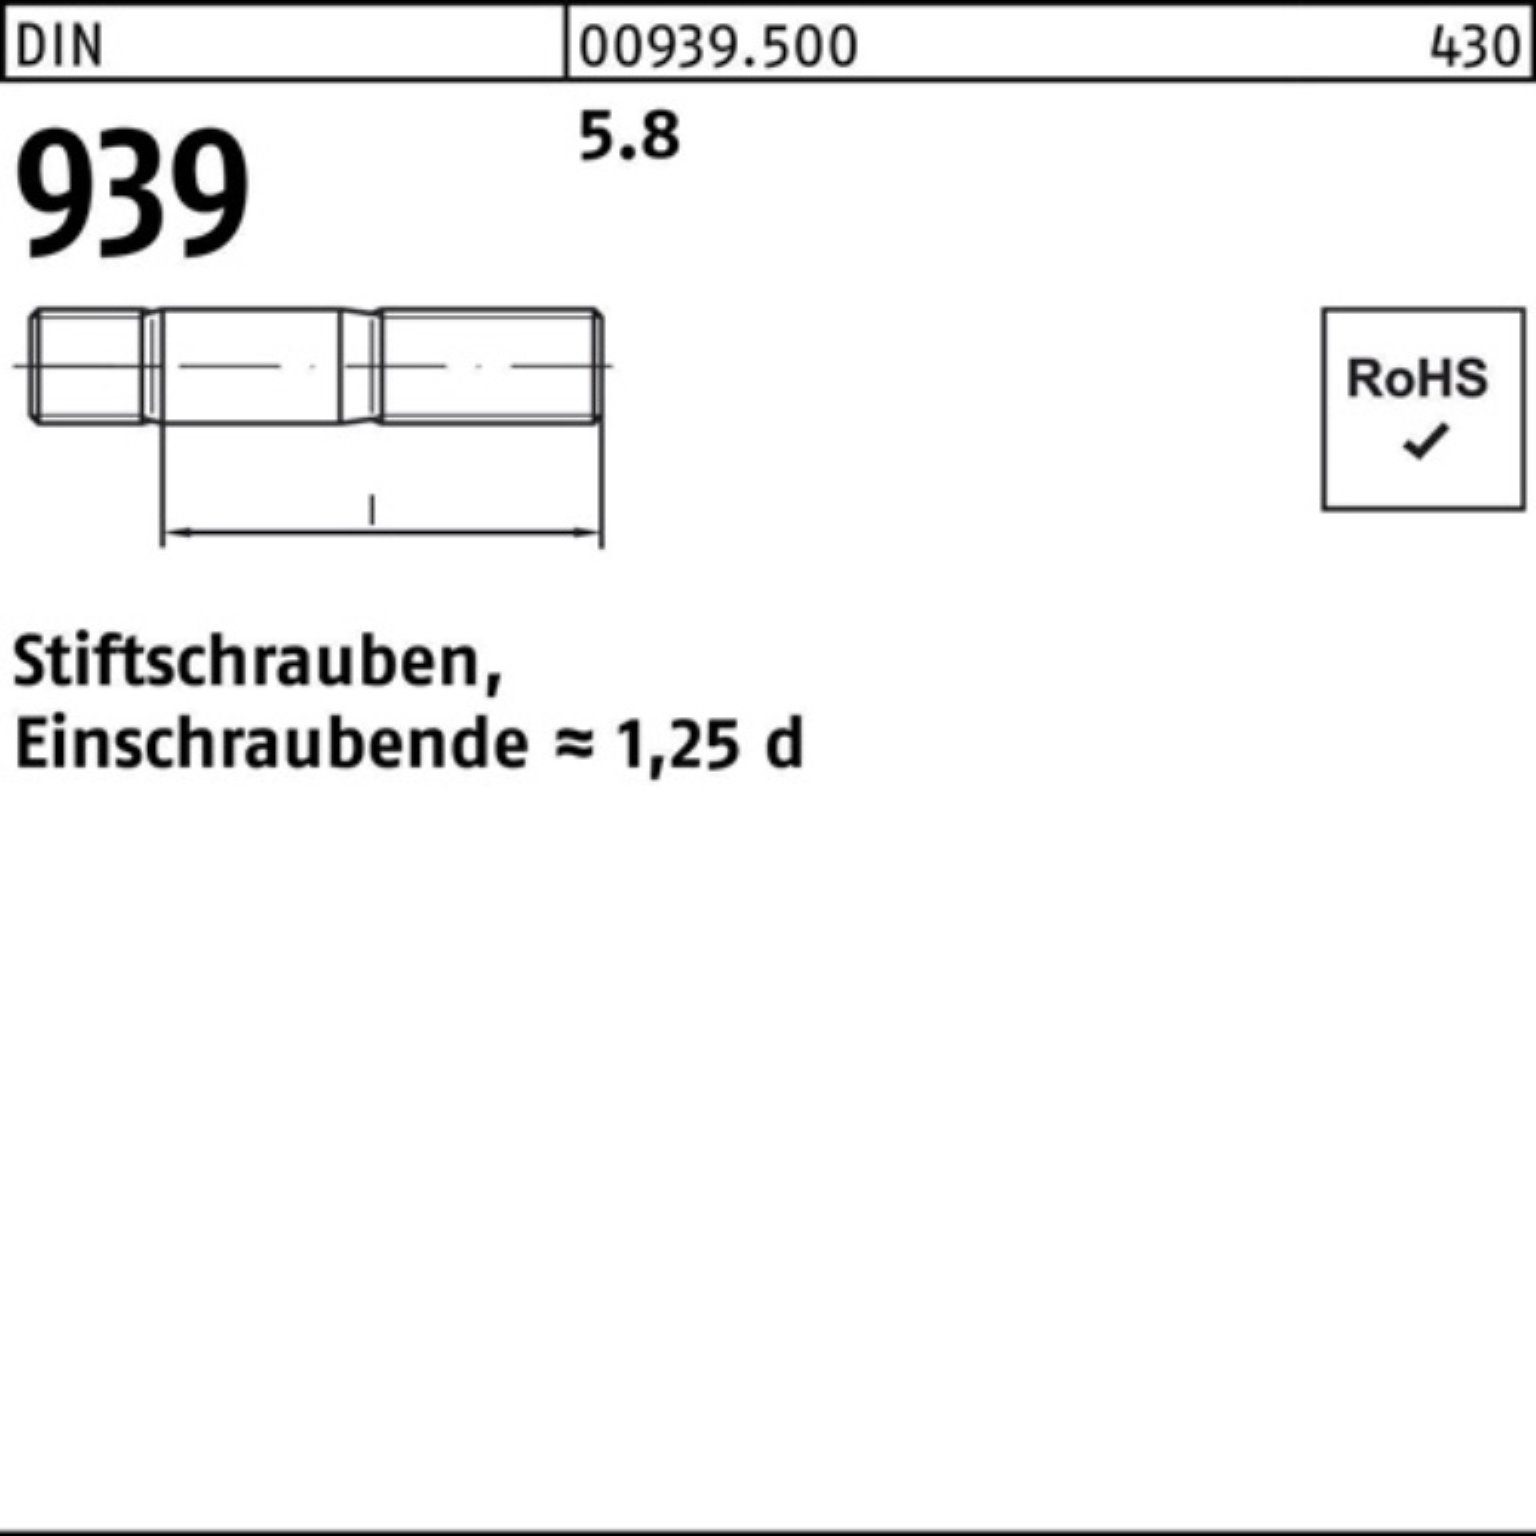 Reyher Stiftschraube 100er Pack 25 200 Einschraubende=1,25d 939 5.8 DIN Stiftschraube M12x